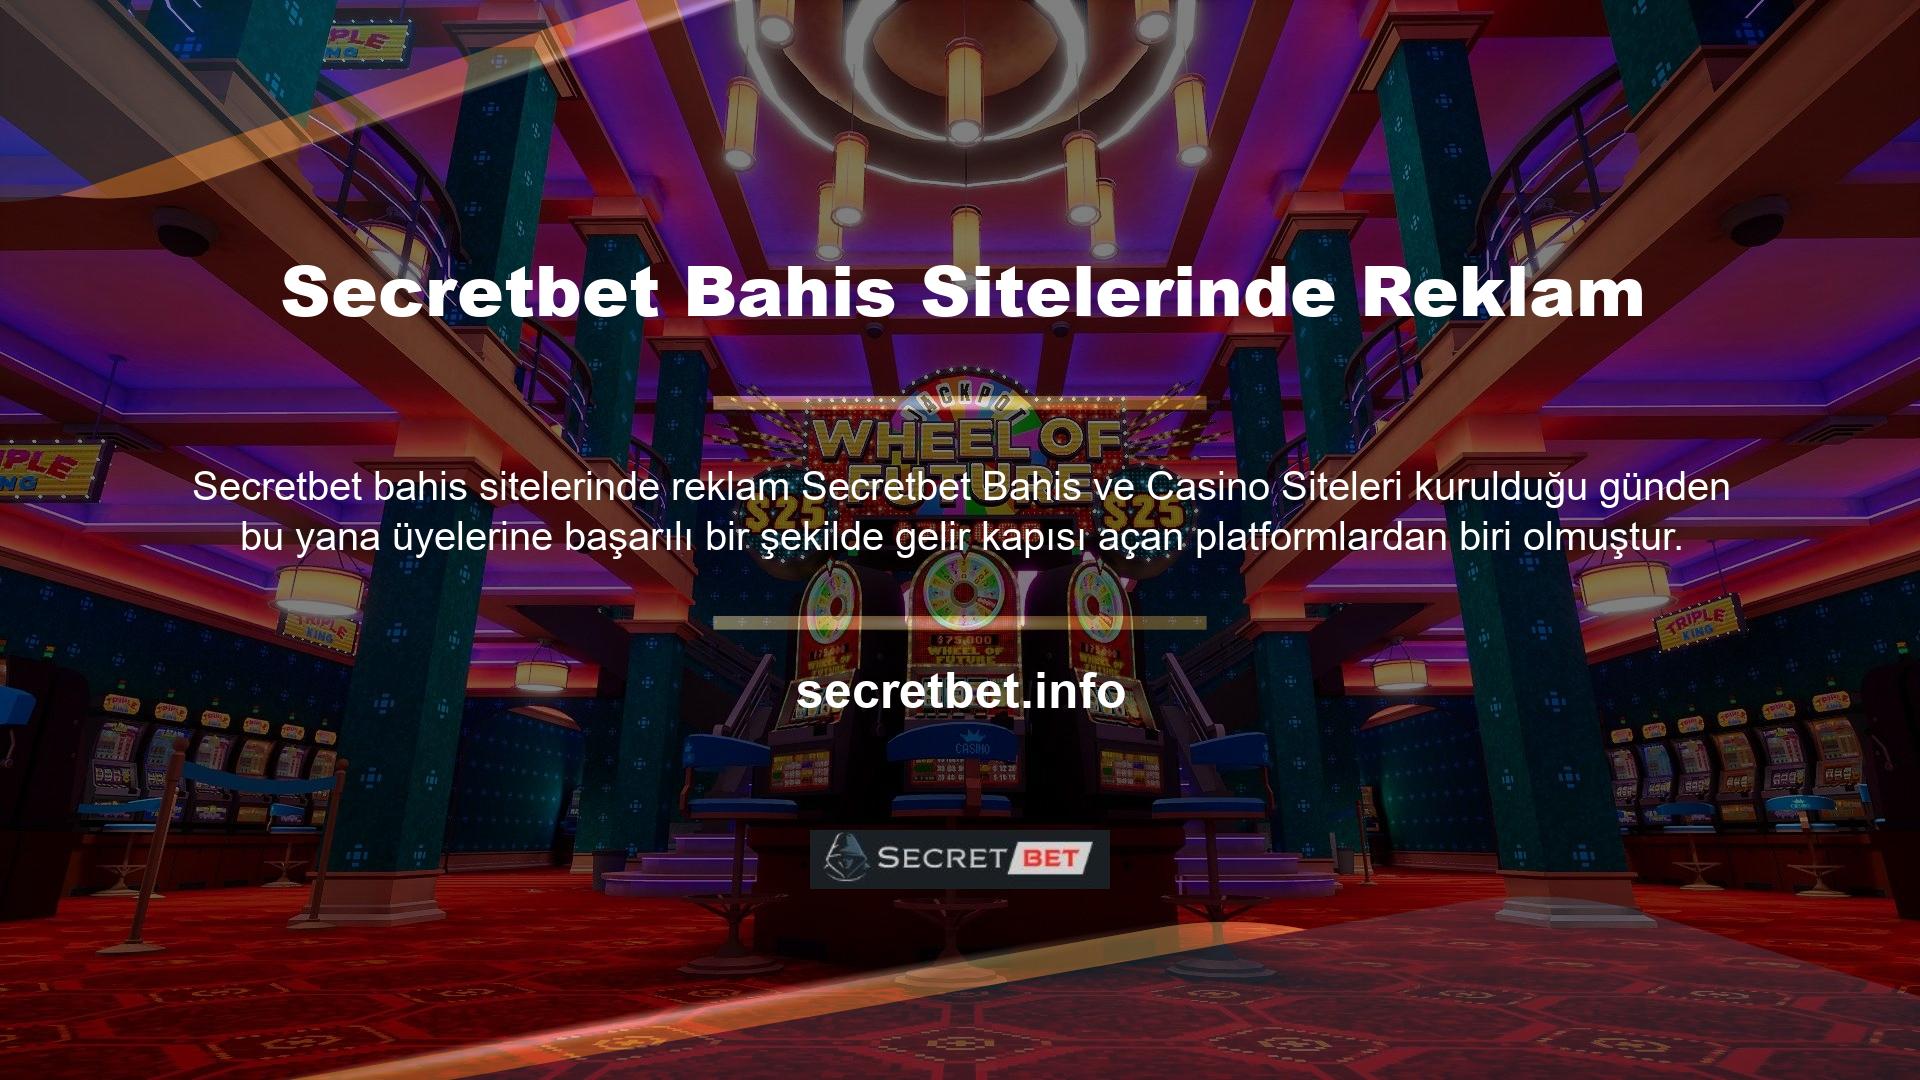 Türkiye'nin en popüler bahis platformlarından biri olan Secretbet, Türkiye casino pazarına ilgi çekici reklamlarla girmiş ve hızla büyümüştür